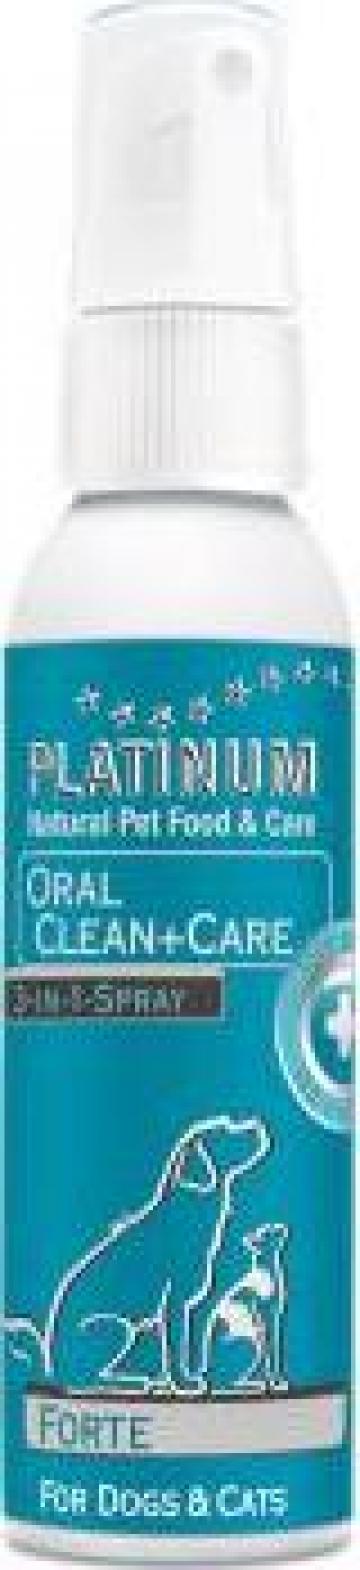 Solutie orala caini, pisici Platinum oral clean & care de la Kraft Logistic Srl